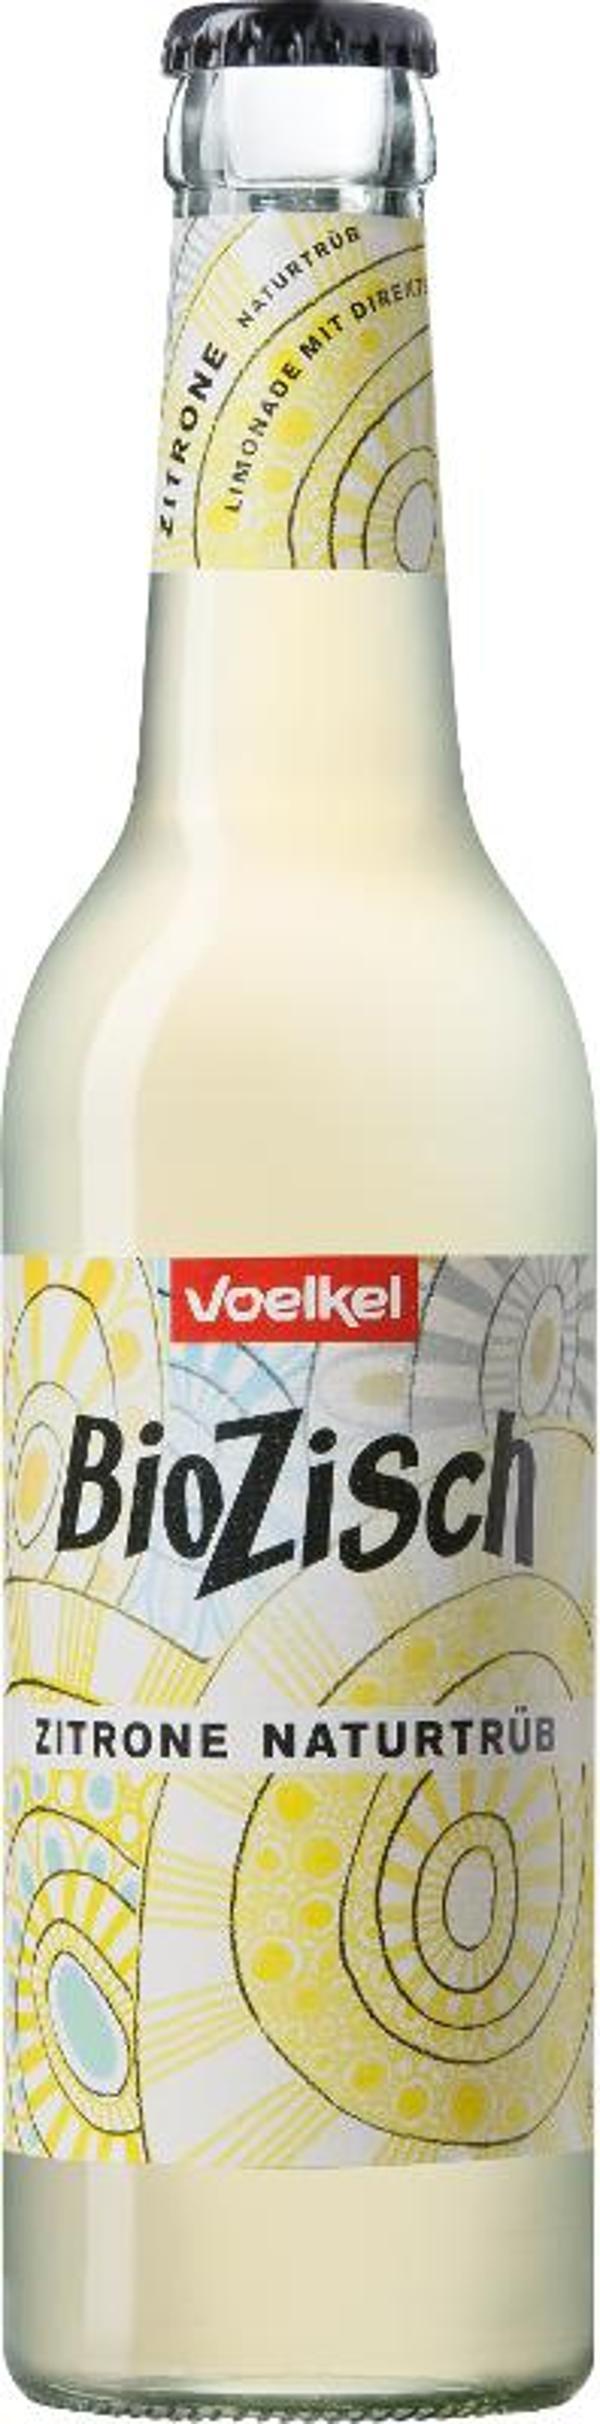 Produktfoto zu Bio Zisch - Zitrone naturtrüb